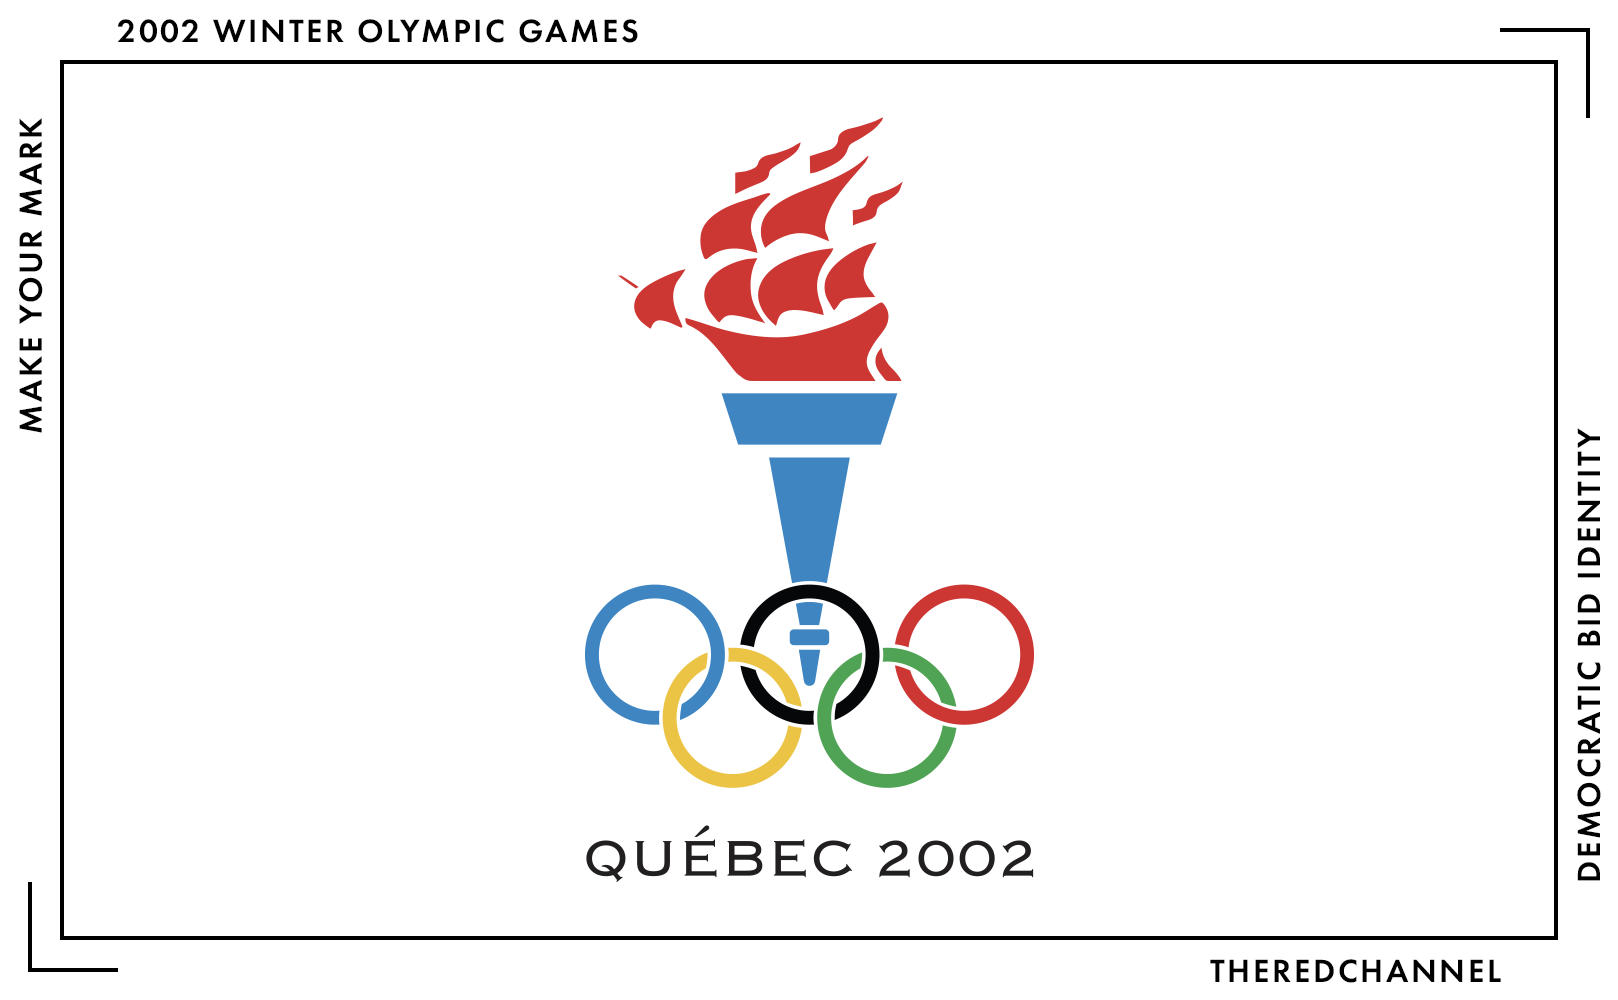 Quebec 2002 Bid Logo